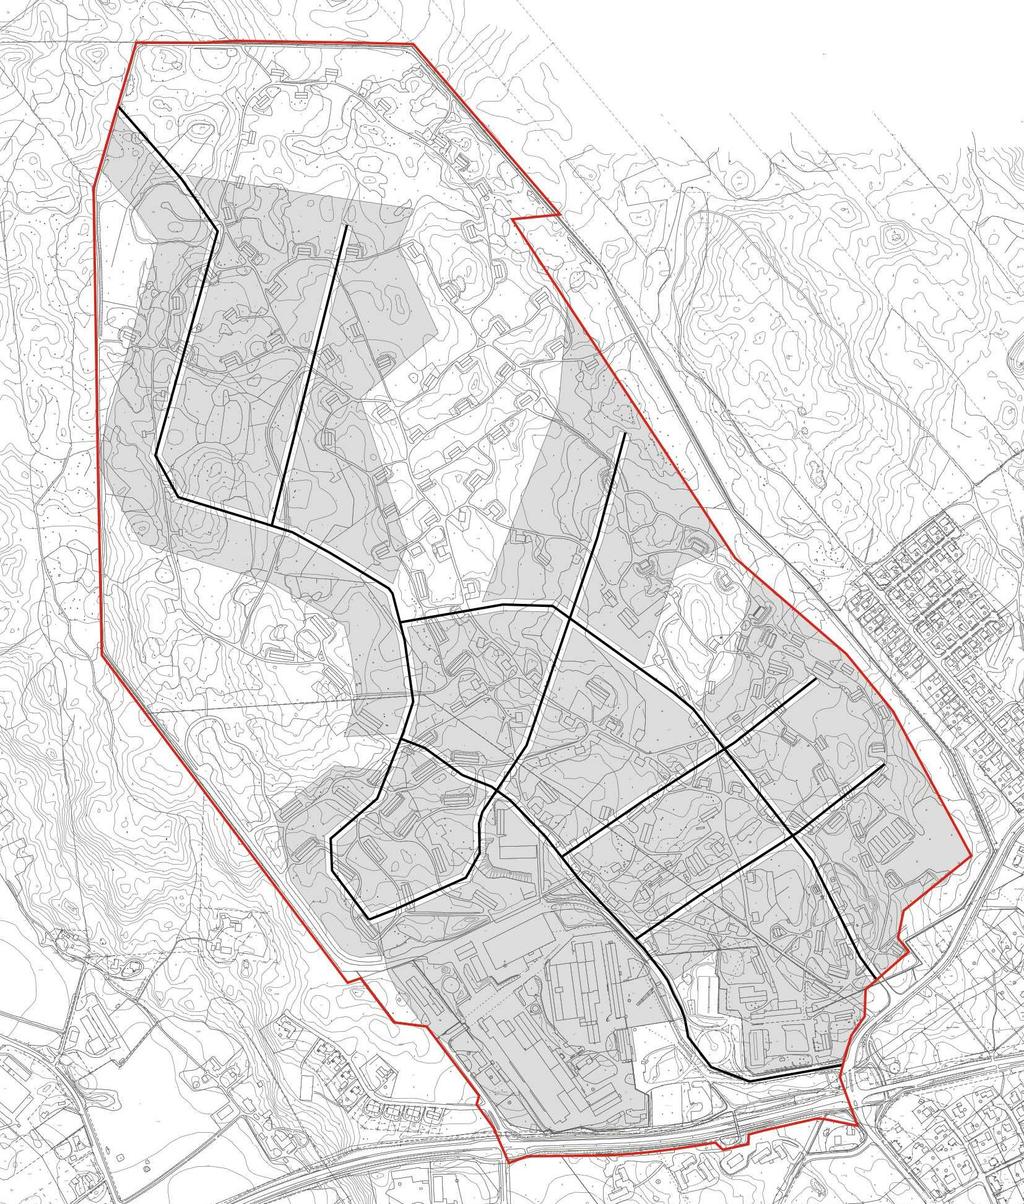 19 KUVA 16: Yleissuunnitelma pohjakartalla. Kuvassa on esitetty teollisuuden korttelialueet harmaalla ja katulinjaukset mustalla.